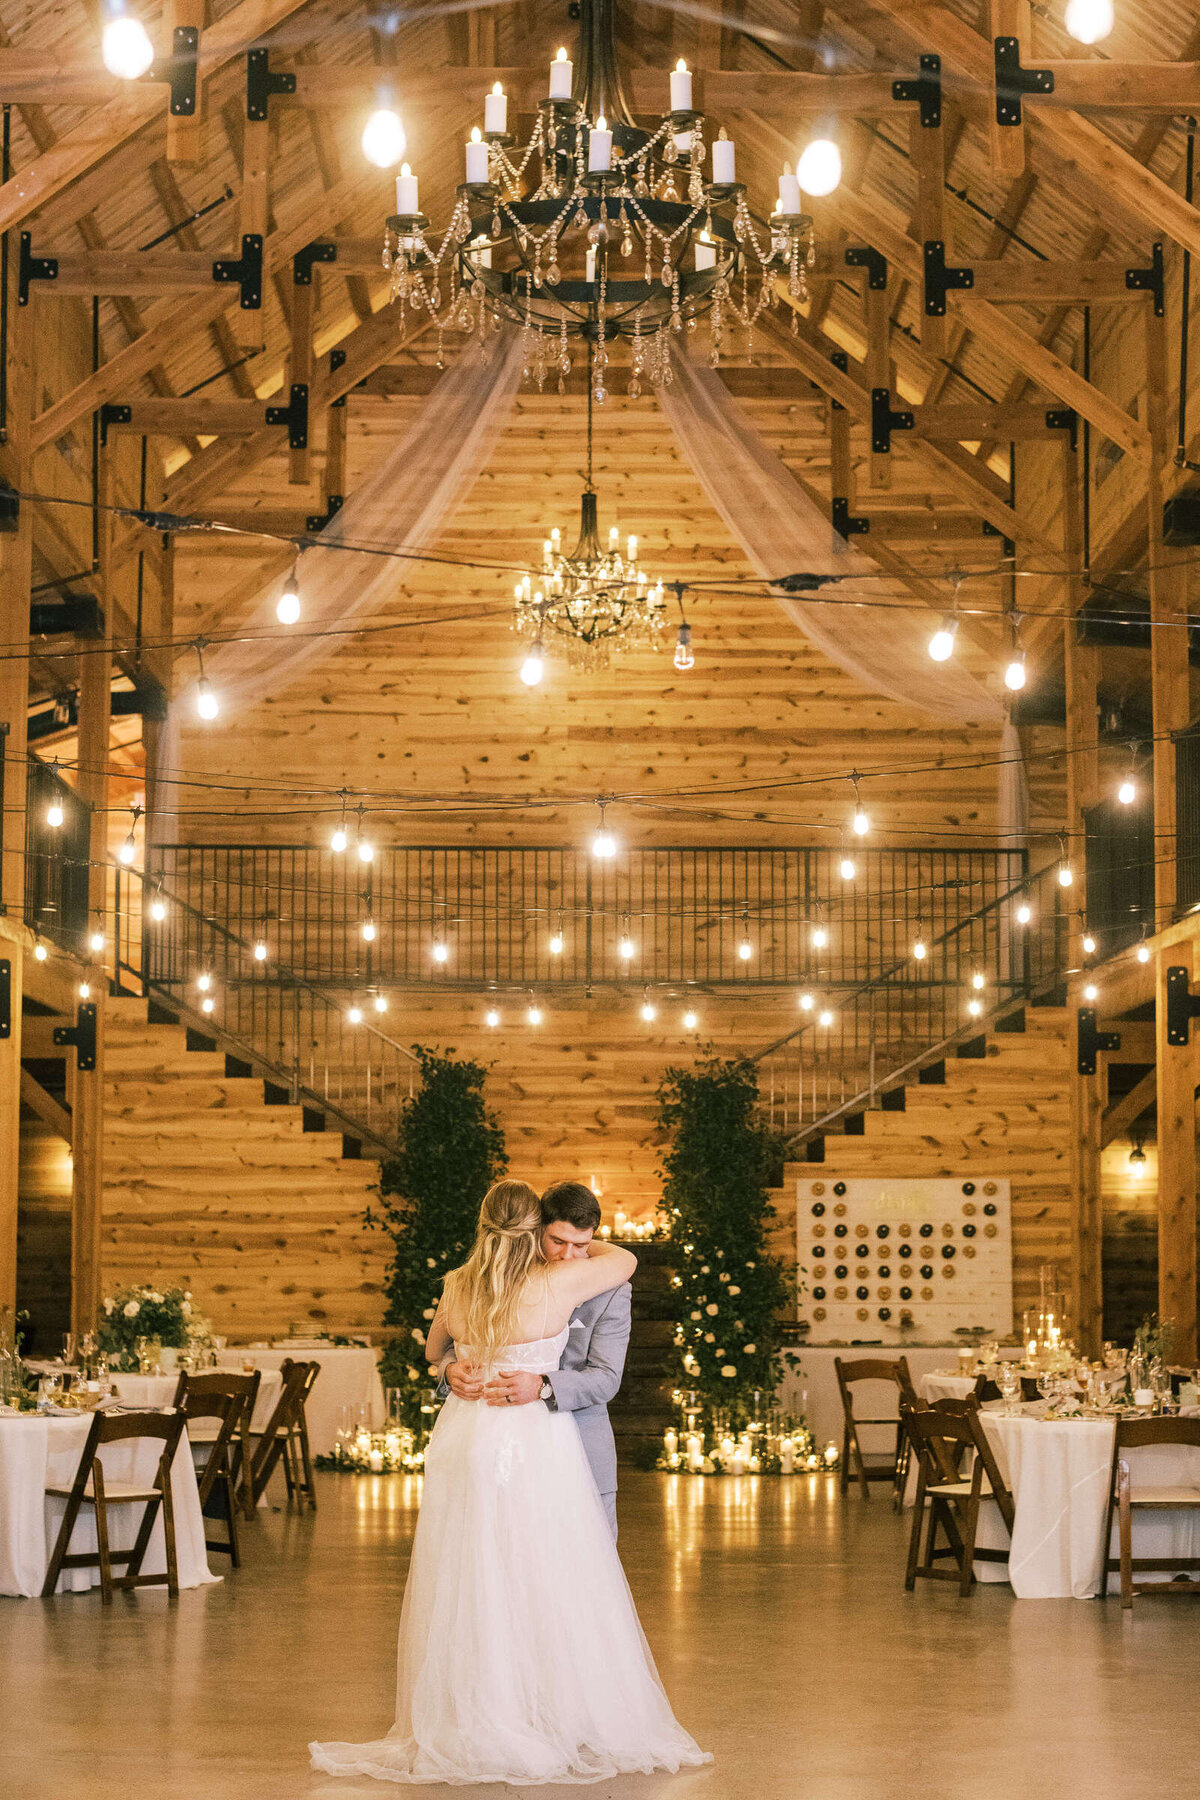 Bride and groom's last dance at rustic Chapel Creek Ranch wedding venue in North Texas